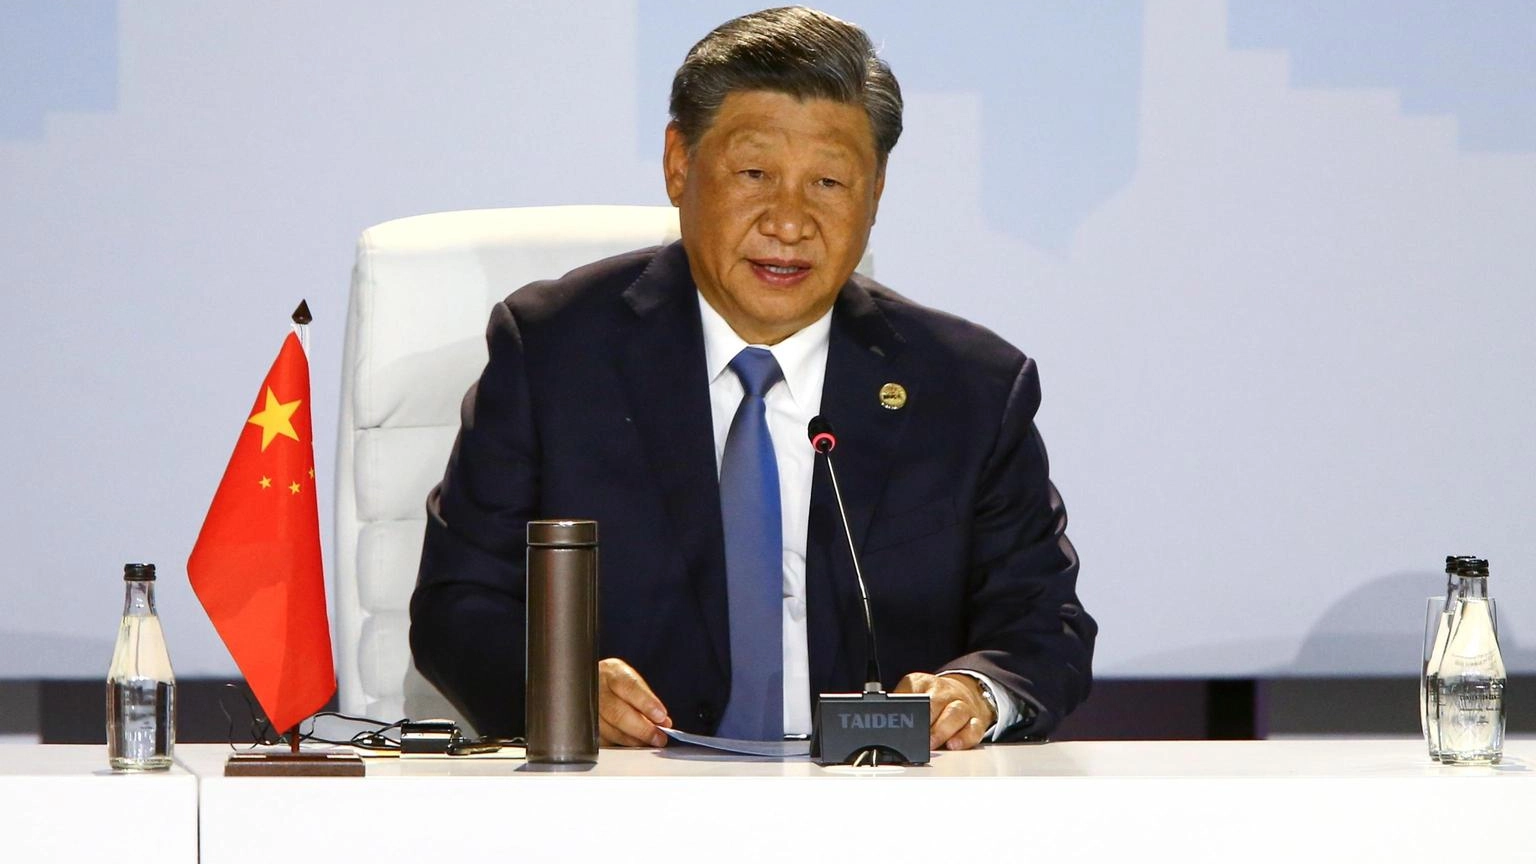 Media, Xi potrebbe saltare il summit G20 in India